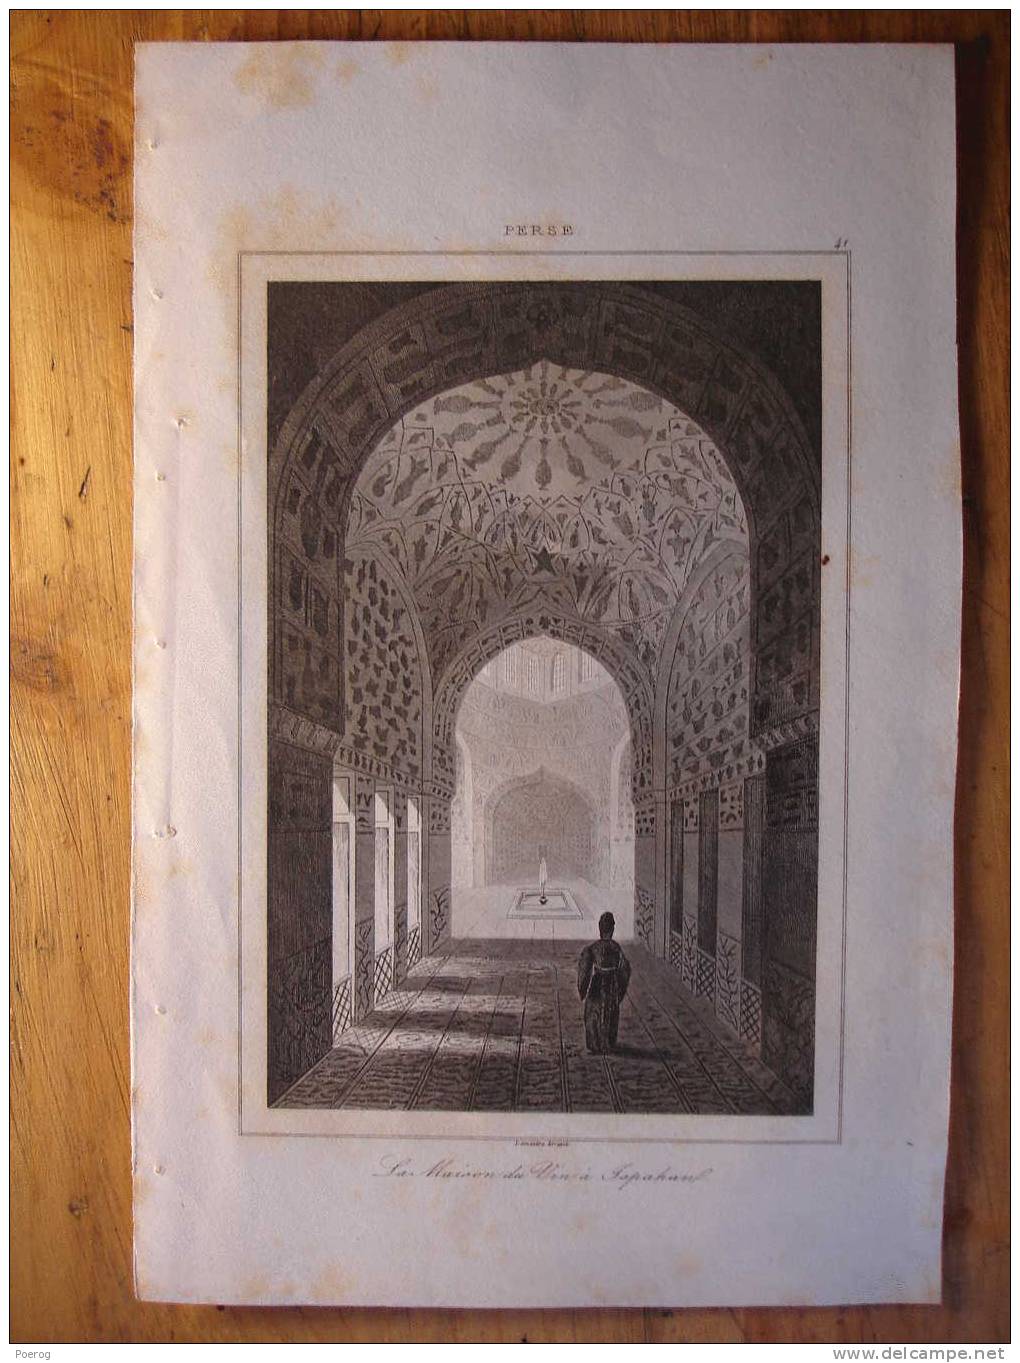 ANCIENNE GRAVURE De 1841 - PERSE - LA MAISON DU VIN A ISPAHAN - LEMAITRE DIREXIT - 1841 - IRAN - 13X20 - Collections